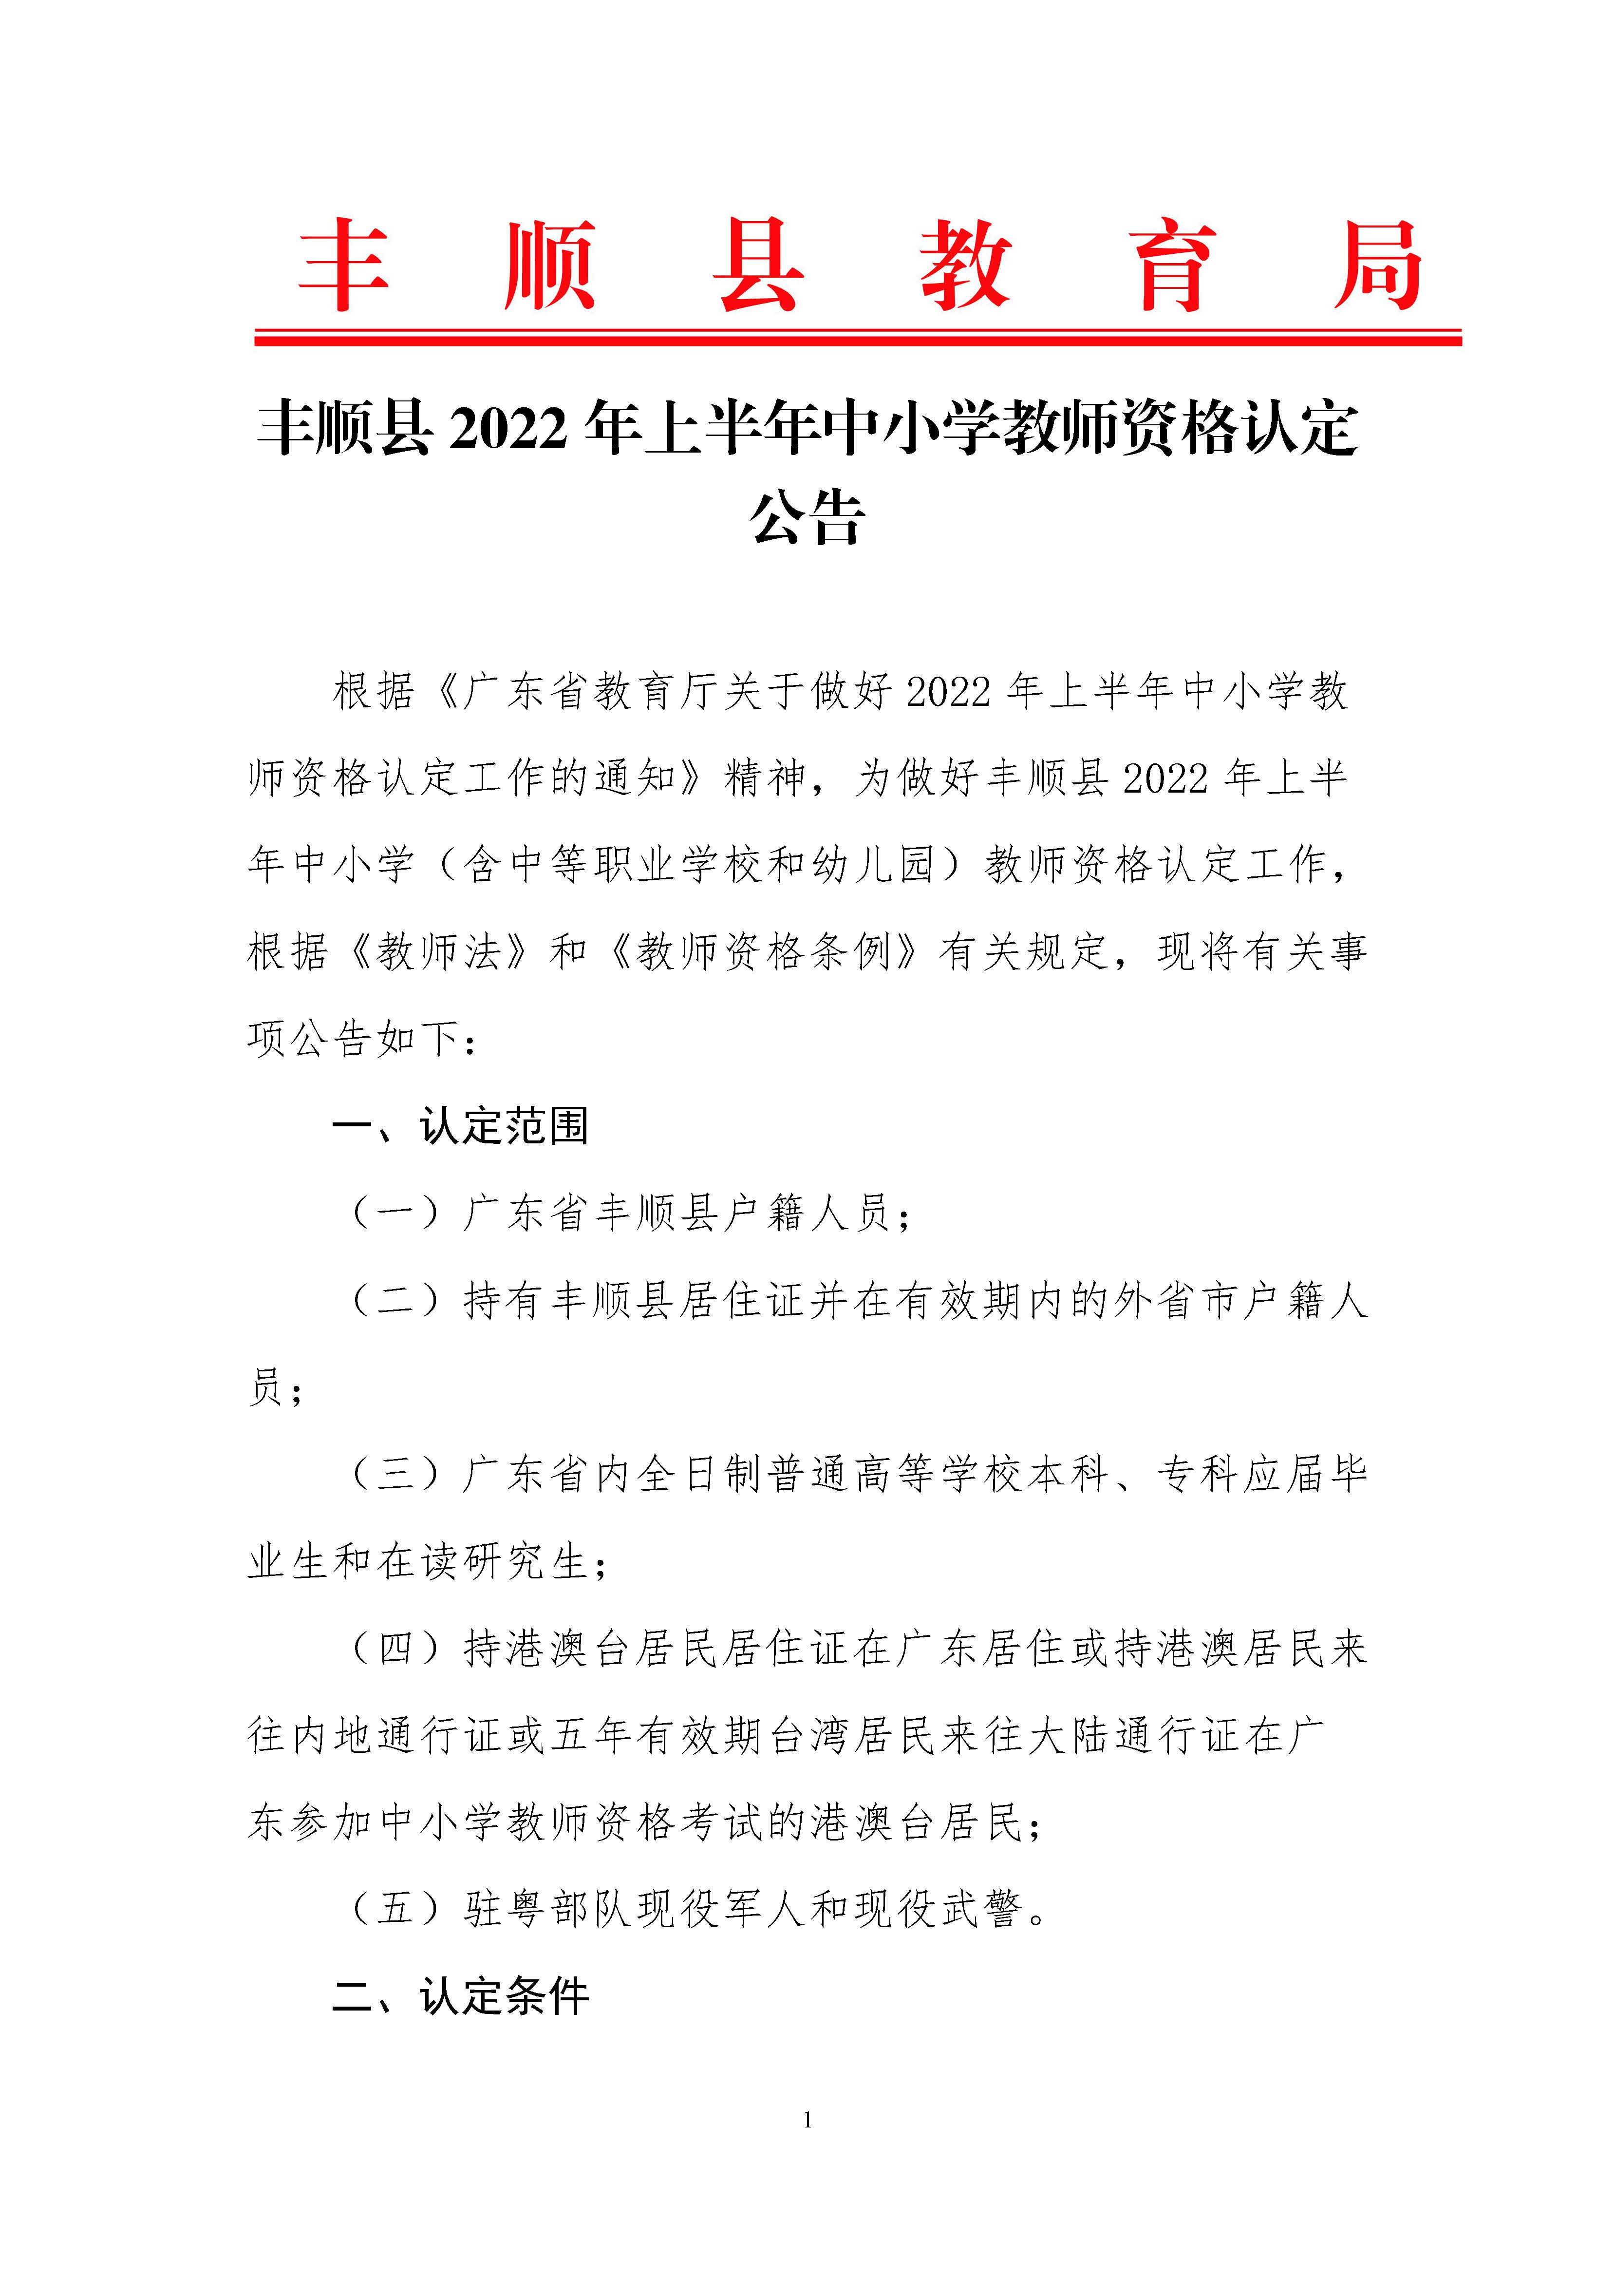 丰顺县2022年上半年中小学教师资格认定公告_页面_01.jpg